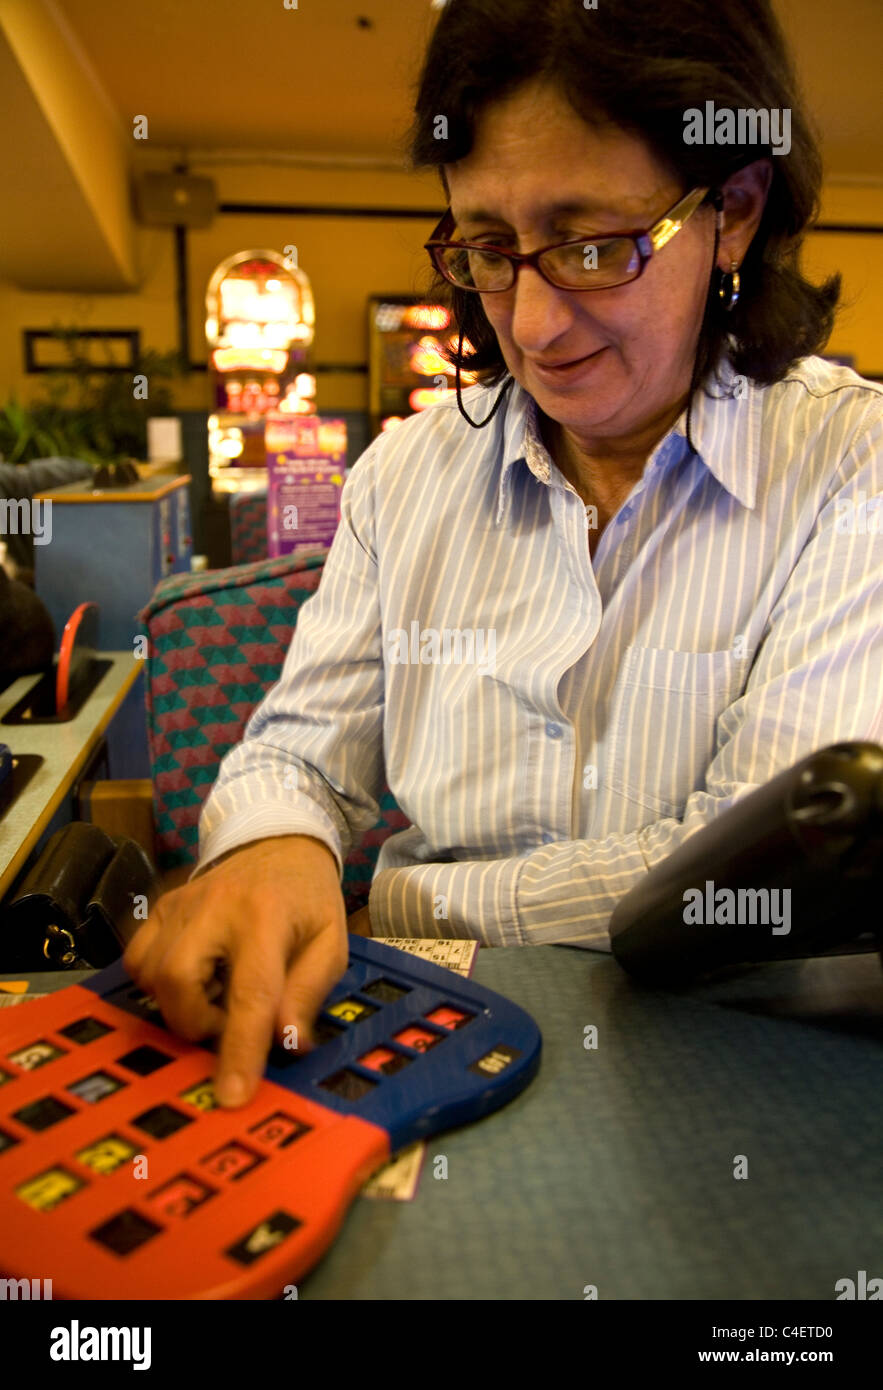 Woman playing table bingo at Beacon Bingo in London Stock Photo